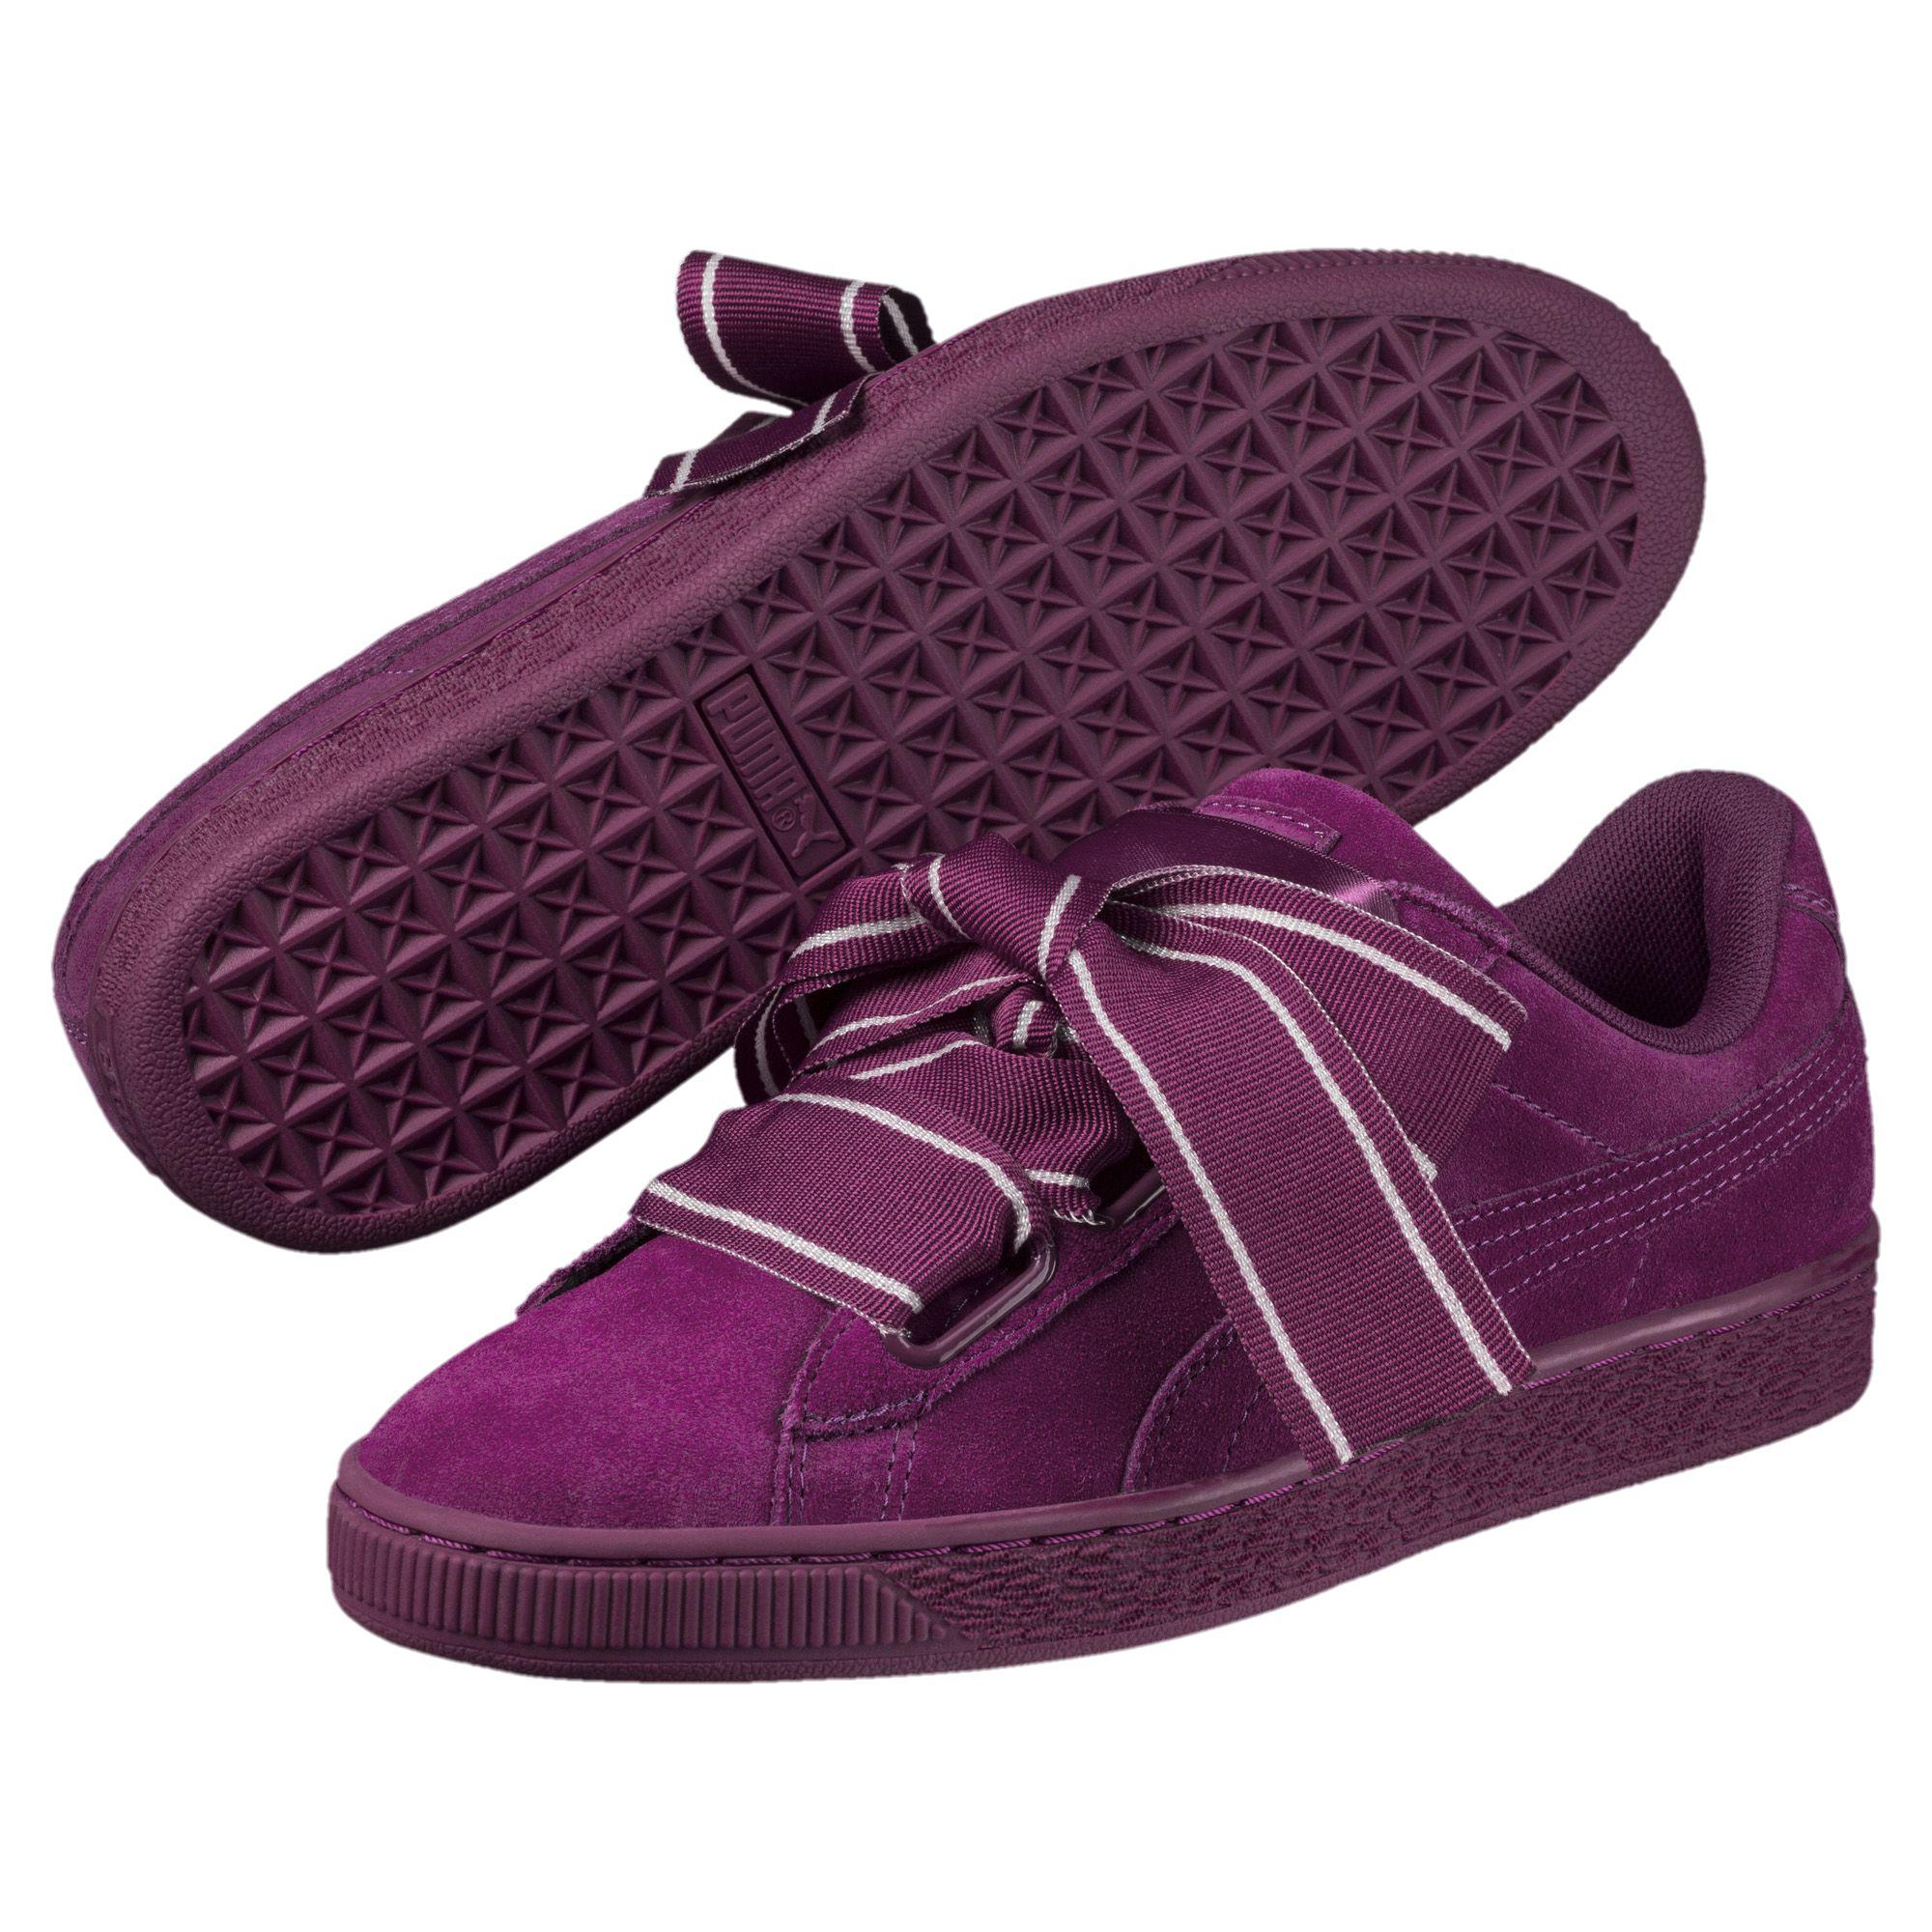 PUMA Suede Heart Satin Ii Women's Sneakers in Dark Purple-Dark Purple ( Purple) - Lyst